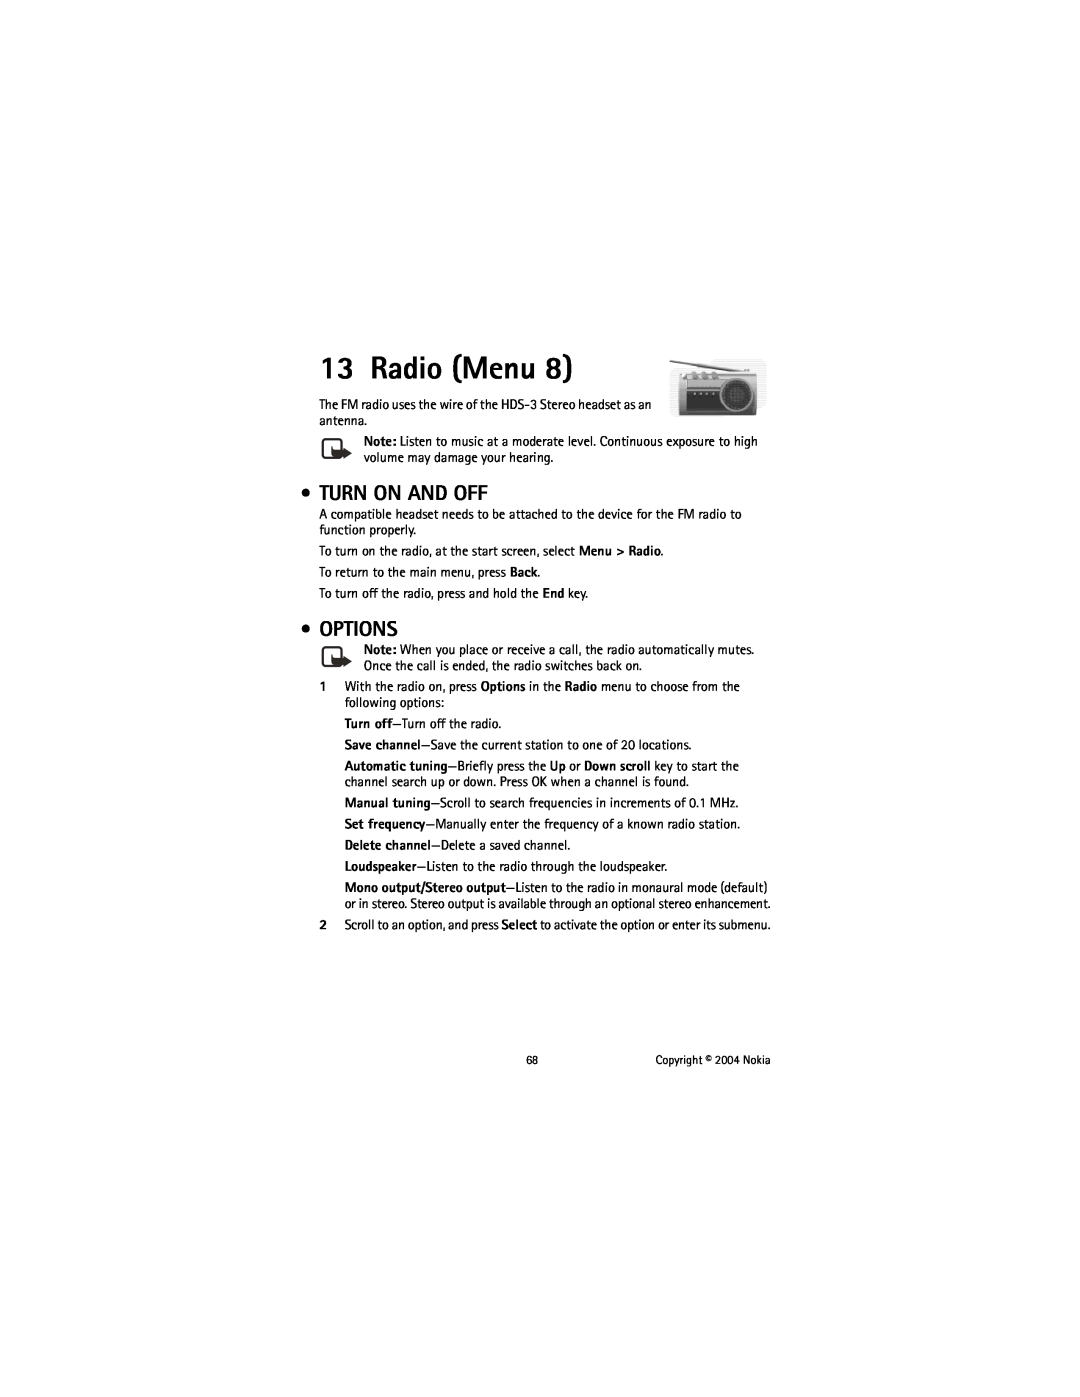 Nokia 6225 manual Radio Menu, Turn On And Off, Options 